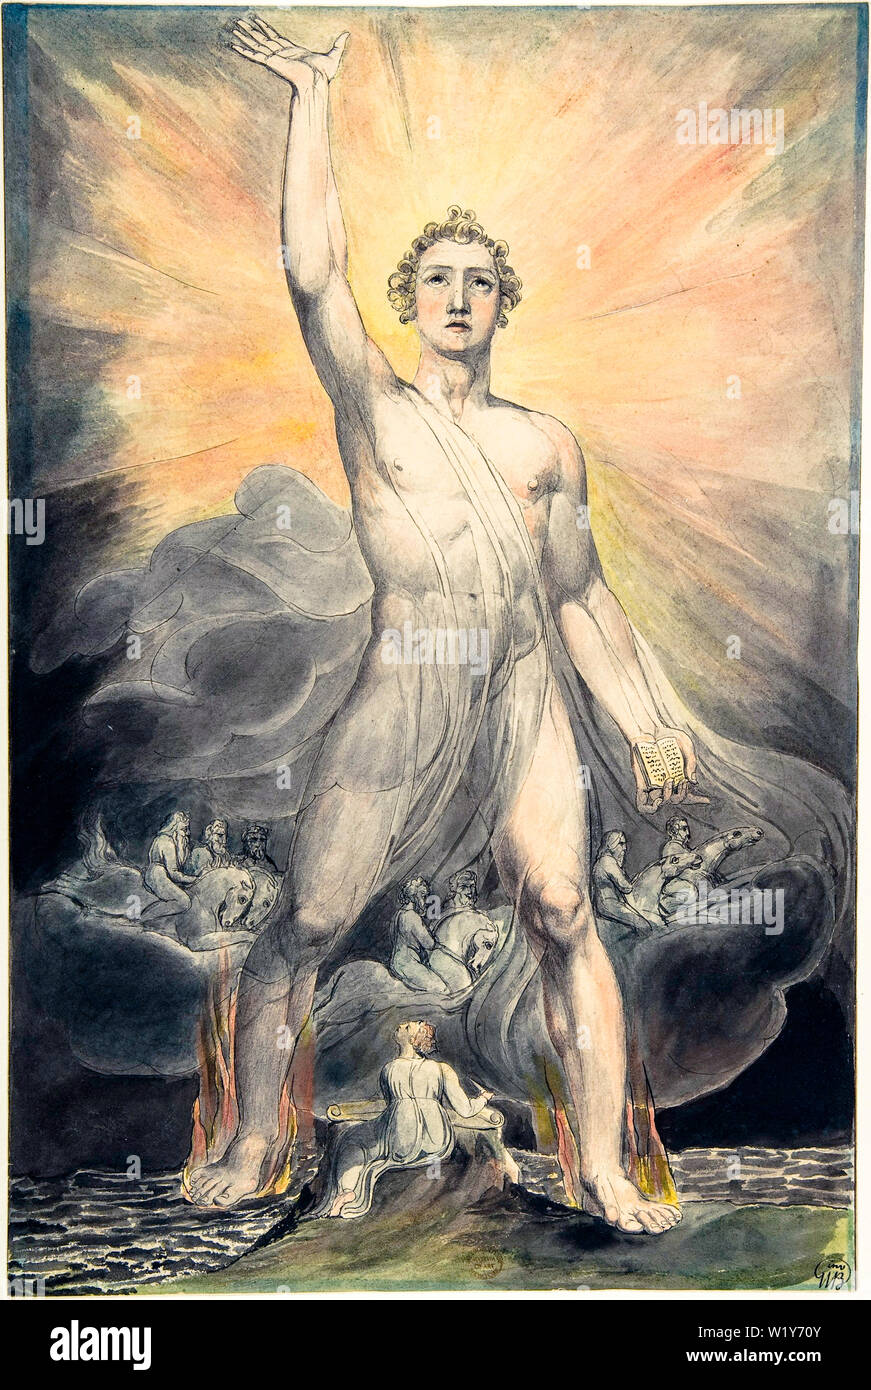 William Blake, Ange de la Révélation, Livre de la Révélation, Chapitre 10, peinture aquarelle sur plume et encre, vers 1803-1805 Banque D'Images